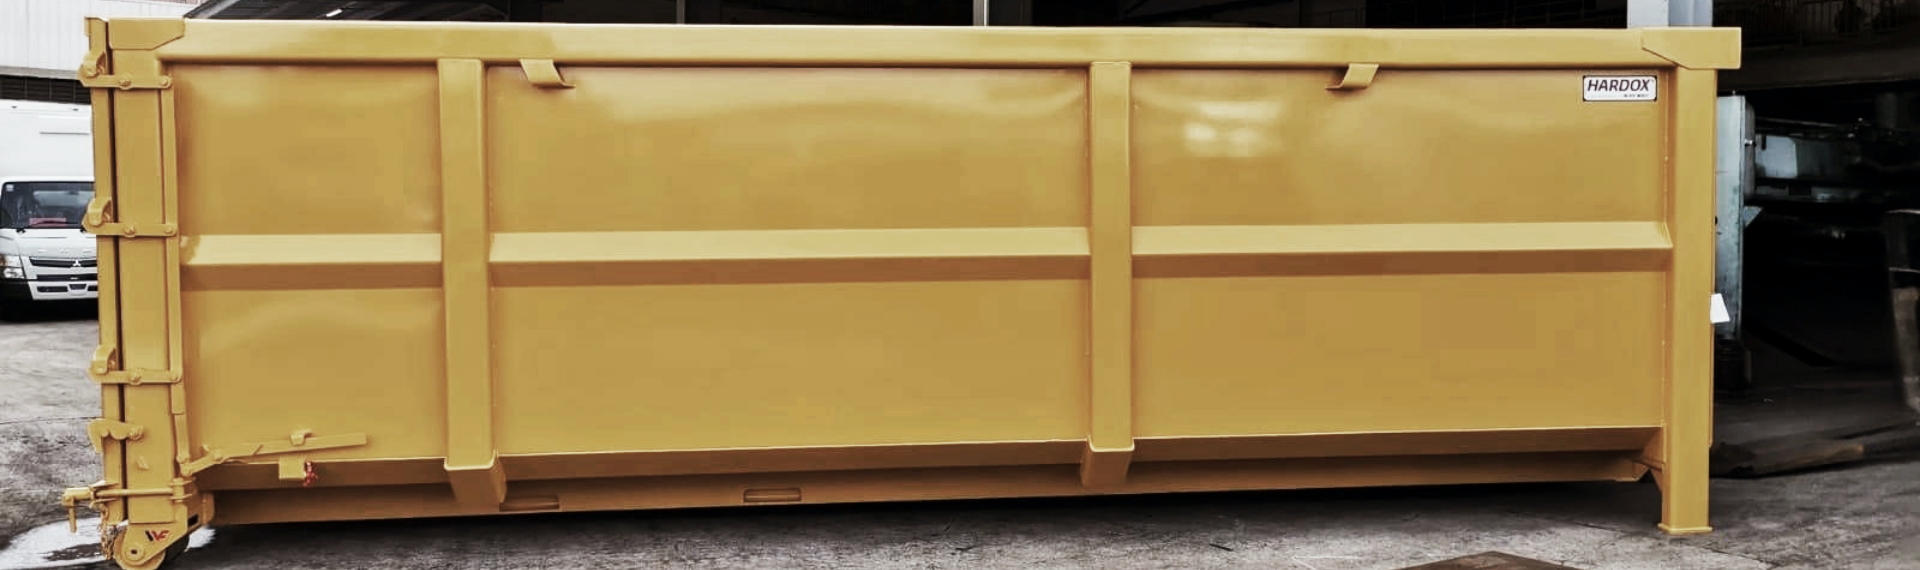 由 Hardox® HiAce 钢材制成的黄色钢制回收集装箱。